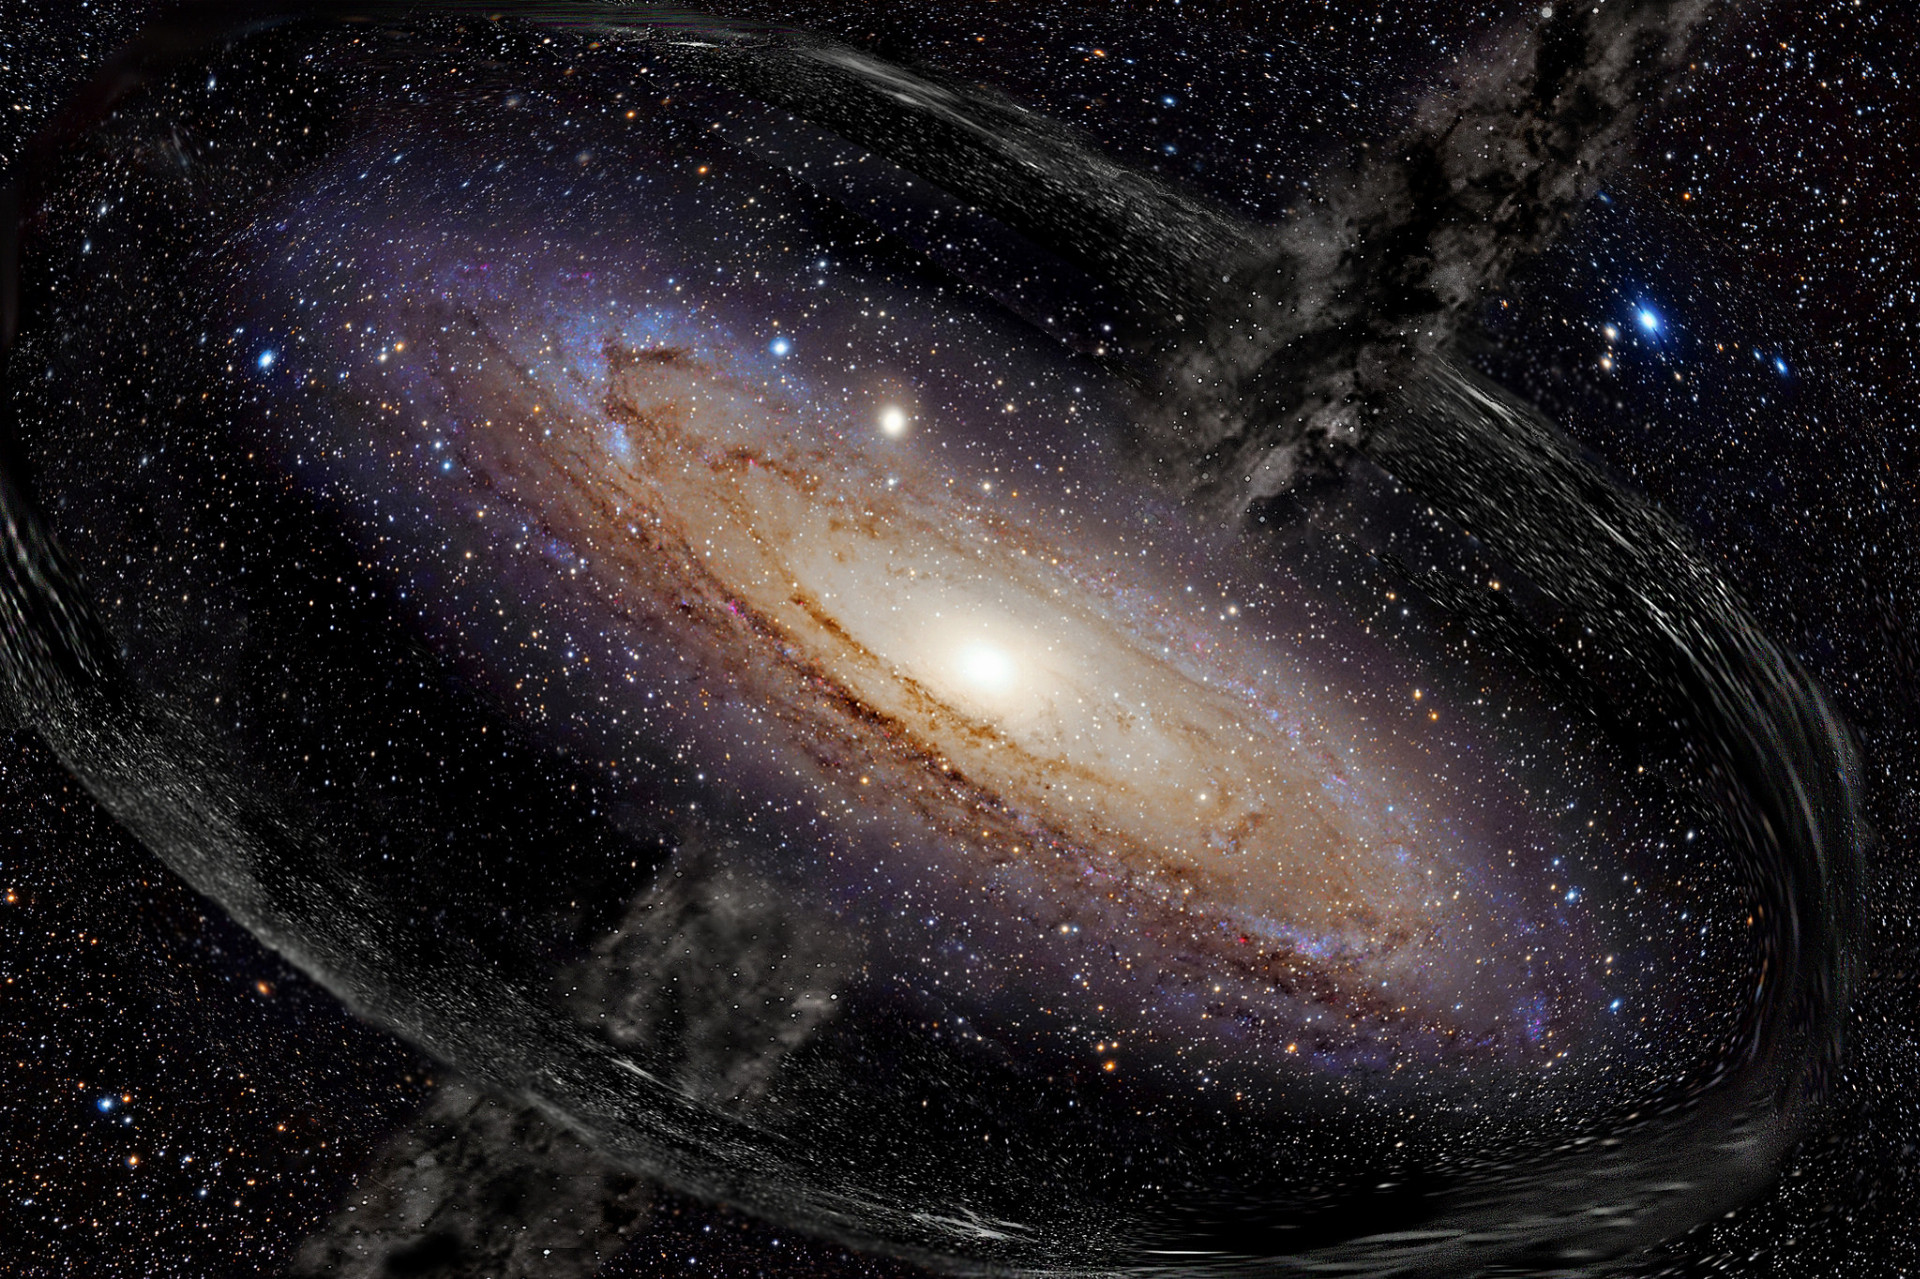 Asi 27 percent vesmíru je temná hmota. Nevyžaruje ani nereaguje na elektromagnetické žiarenie, takže nie je možné ju detegovať. Prvé teórie o temnej hmote sa objavili asi pred 60 rokmi, ale vedci ešte nepredložili priame dôkazy o jej existencii.